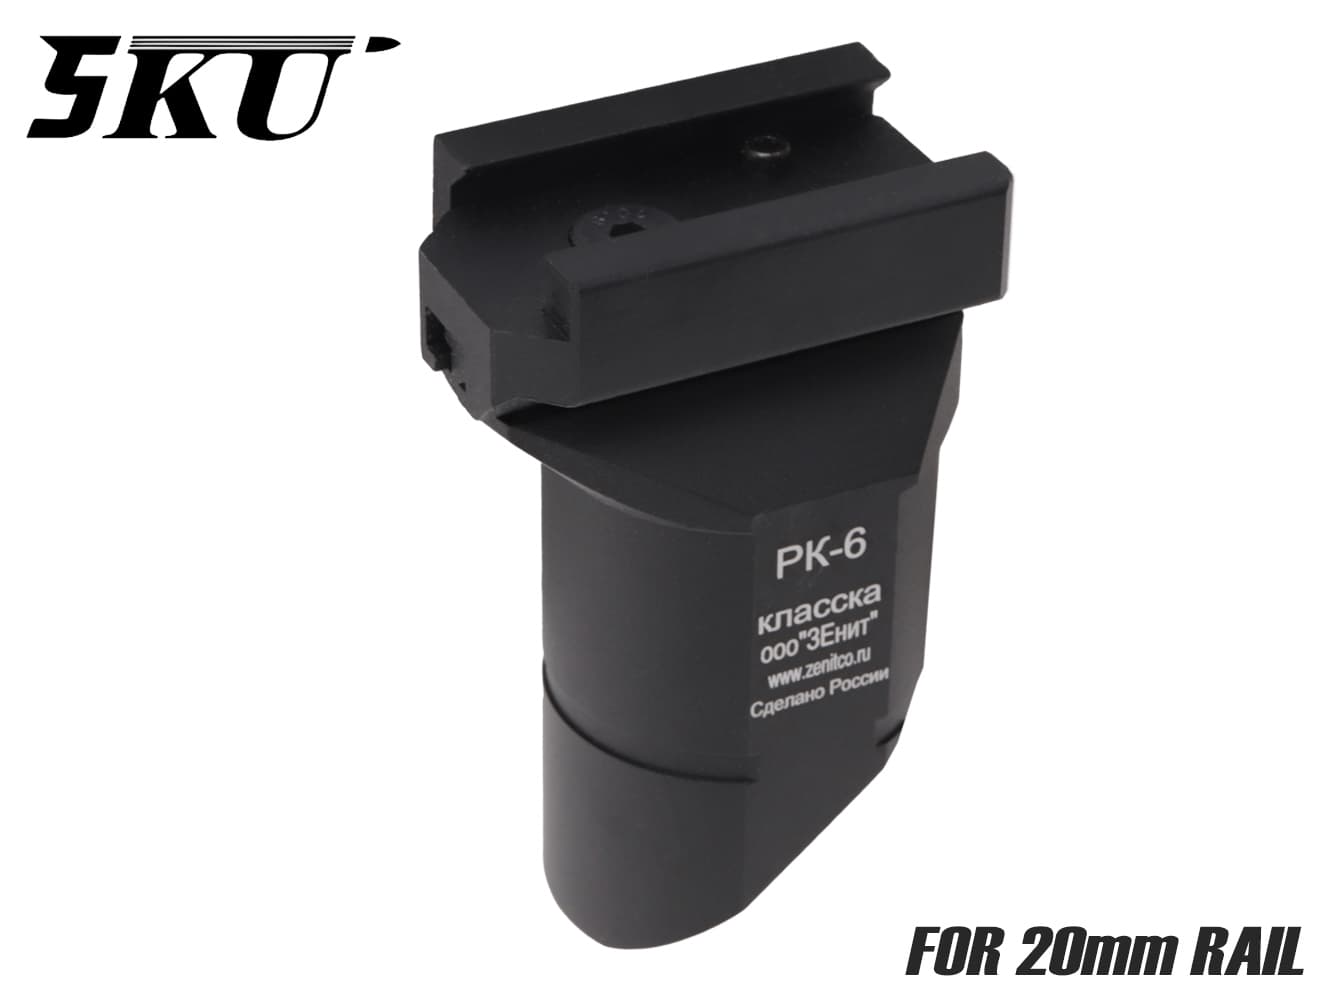 5KU PK-6 ハンドストップ for 20mmレール オール アルミ製 円形型 スラッシュカット グリップ デザイン ハンドストップ BIZON マッチング ブラック PK-1 斜め